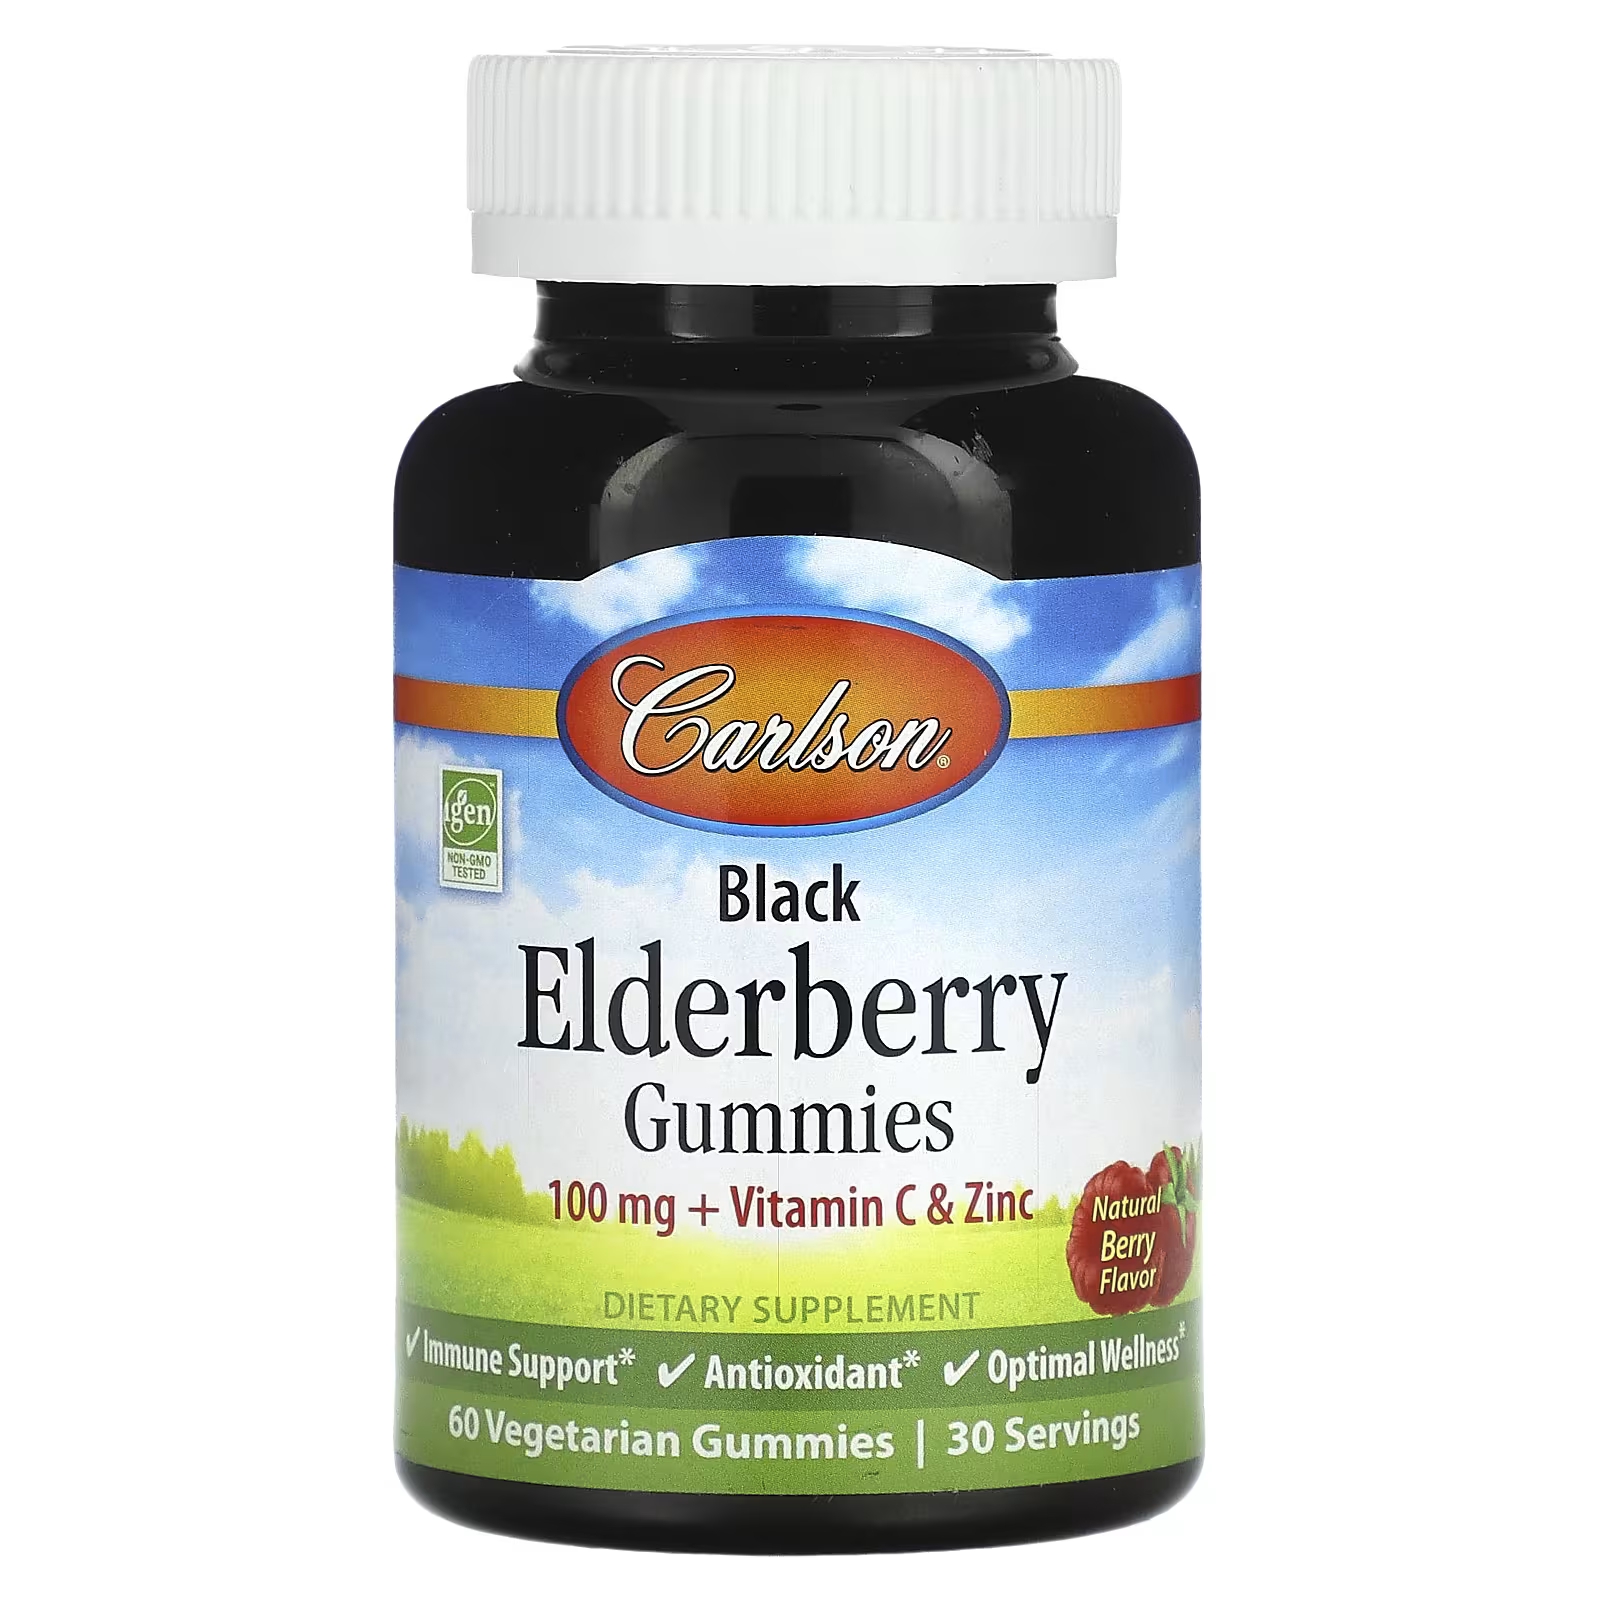 Пищевая добавка Carlson Black Elderberry Gummies Natural Berry, 60 вегетарианских конфет kids elderberry super immune softchew gummies natural berry 27 таблеток childlife essentials